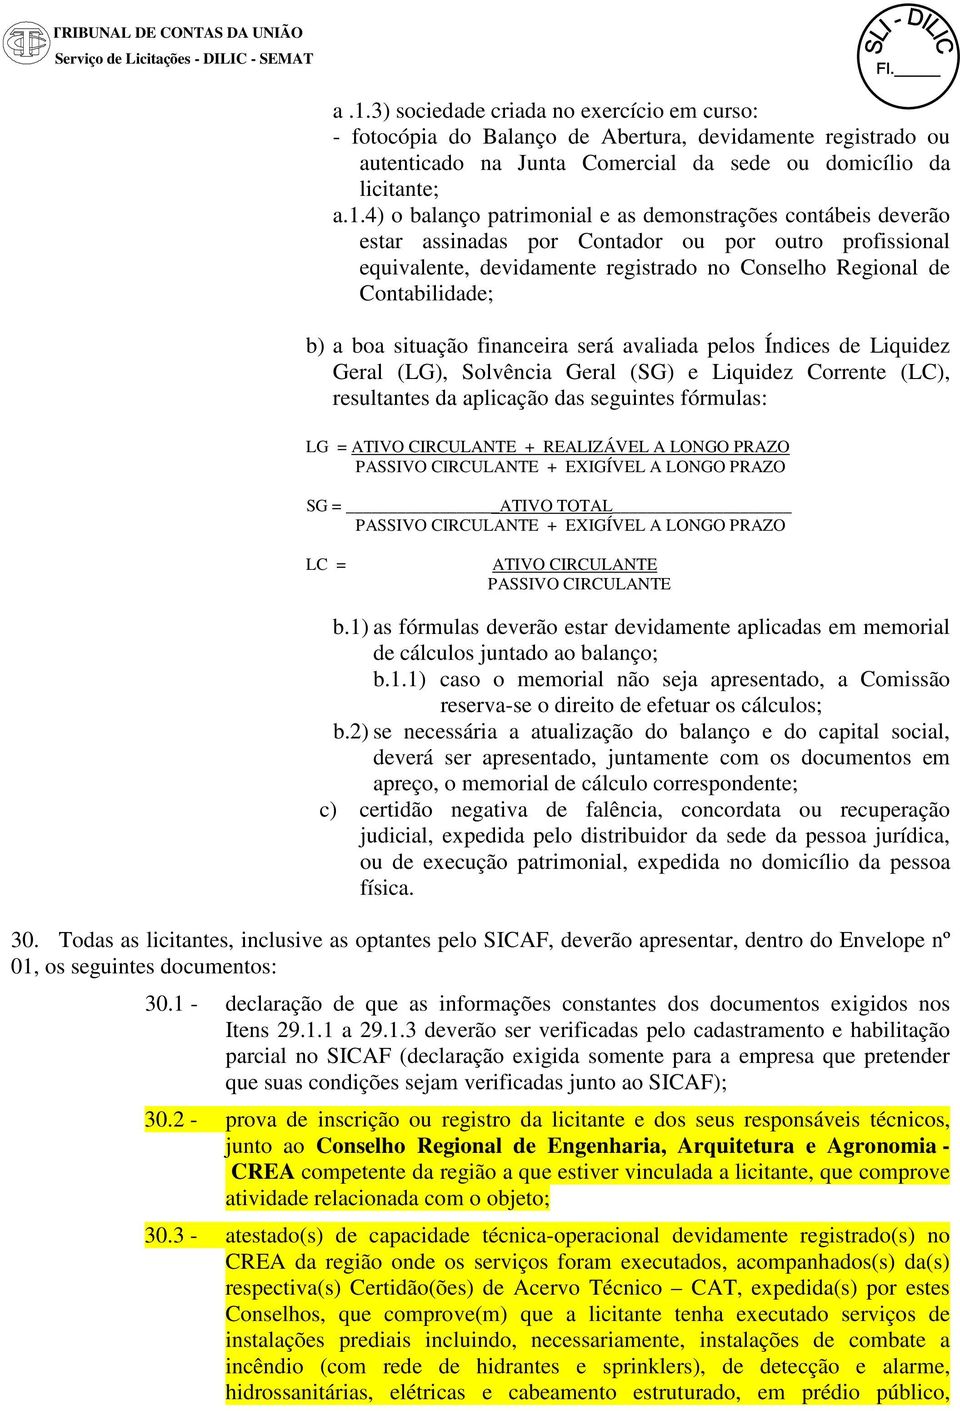 4) o balanço patrimonial e as demonstrações contábeis deverão estar assinadas por Contador ou por outro profissional equivalente, devidamente registrado no Conselho Regional de Contabilidade; b) a